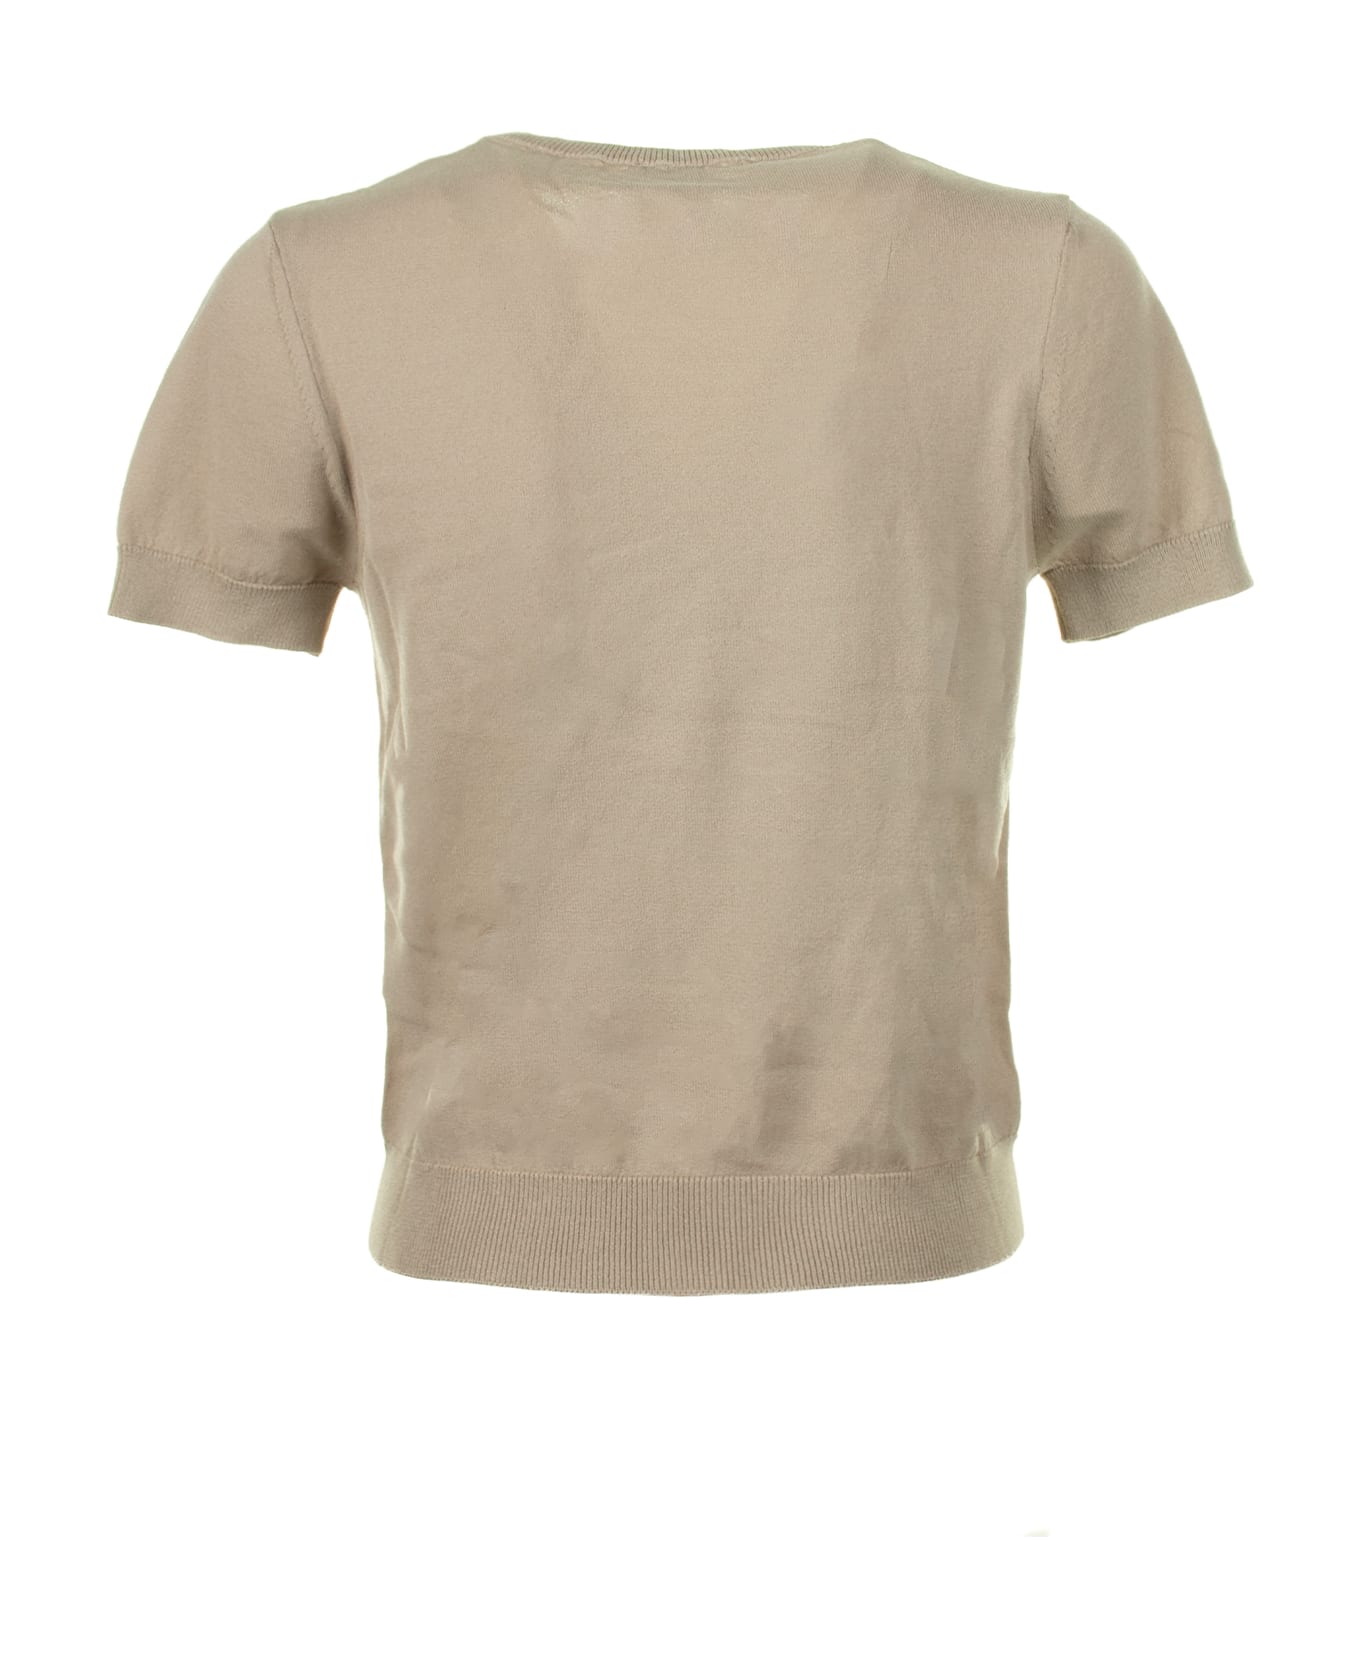 Cruna T-shirt In Beige Cotton Thread - TORTORA